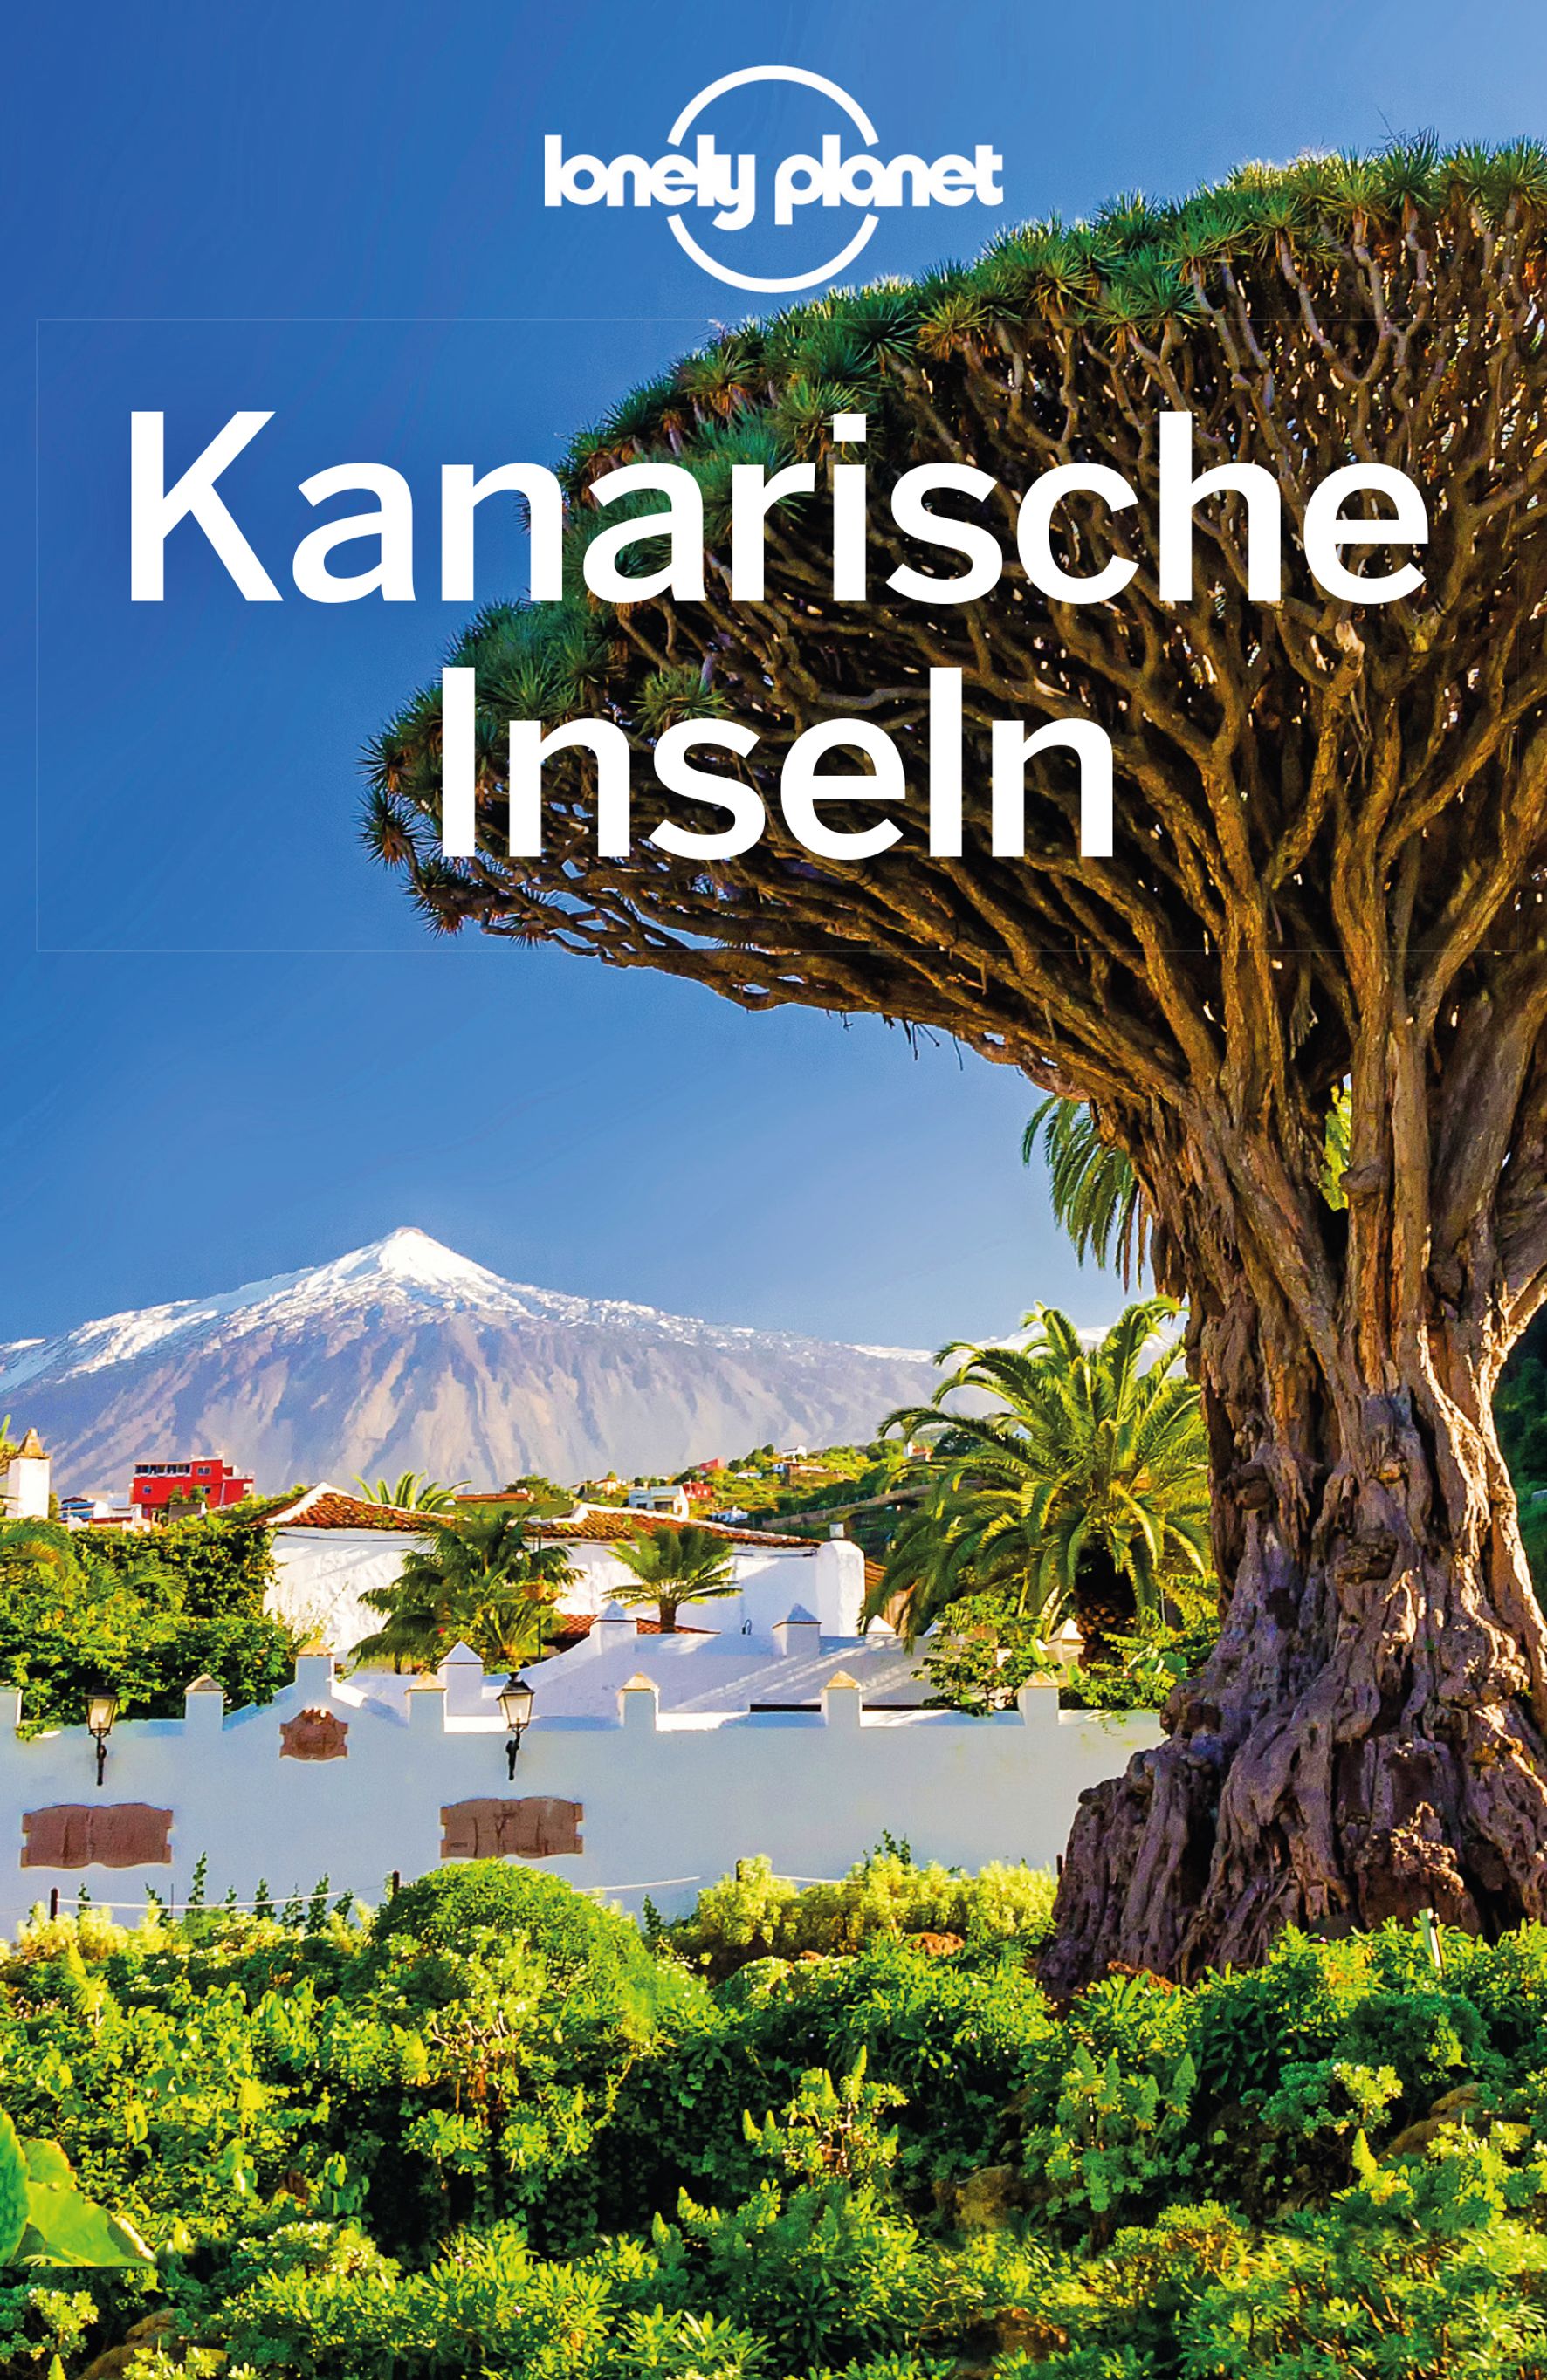 Lonely Planet Kanarische Inseln (eBook)